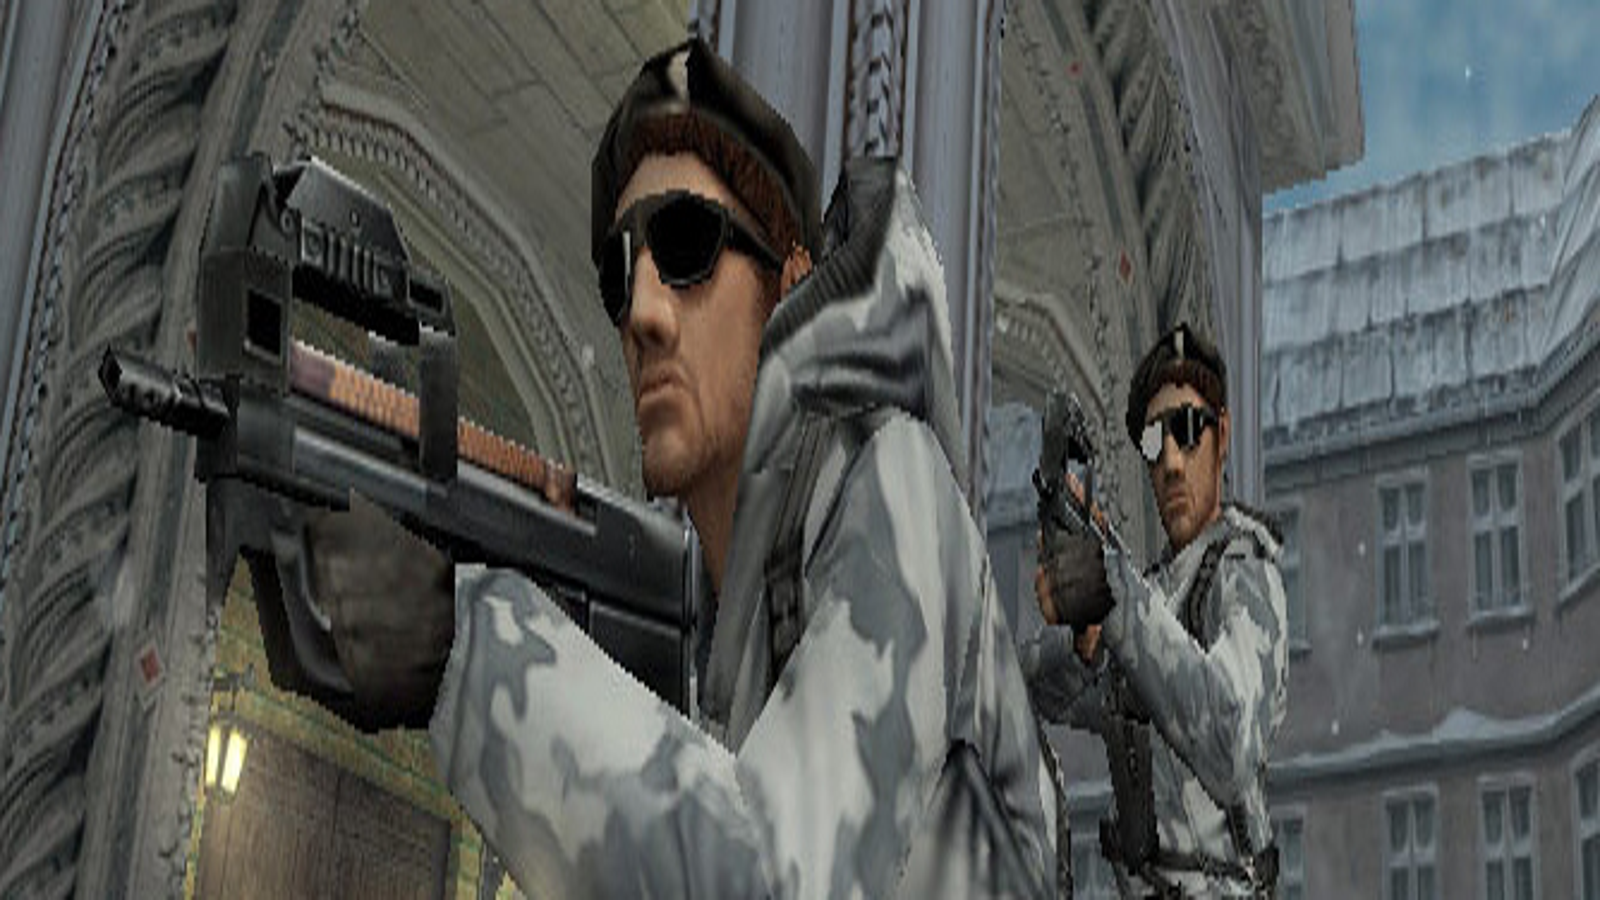 Counter-Strike: Condition Zero Overview